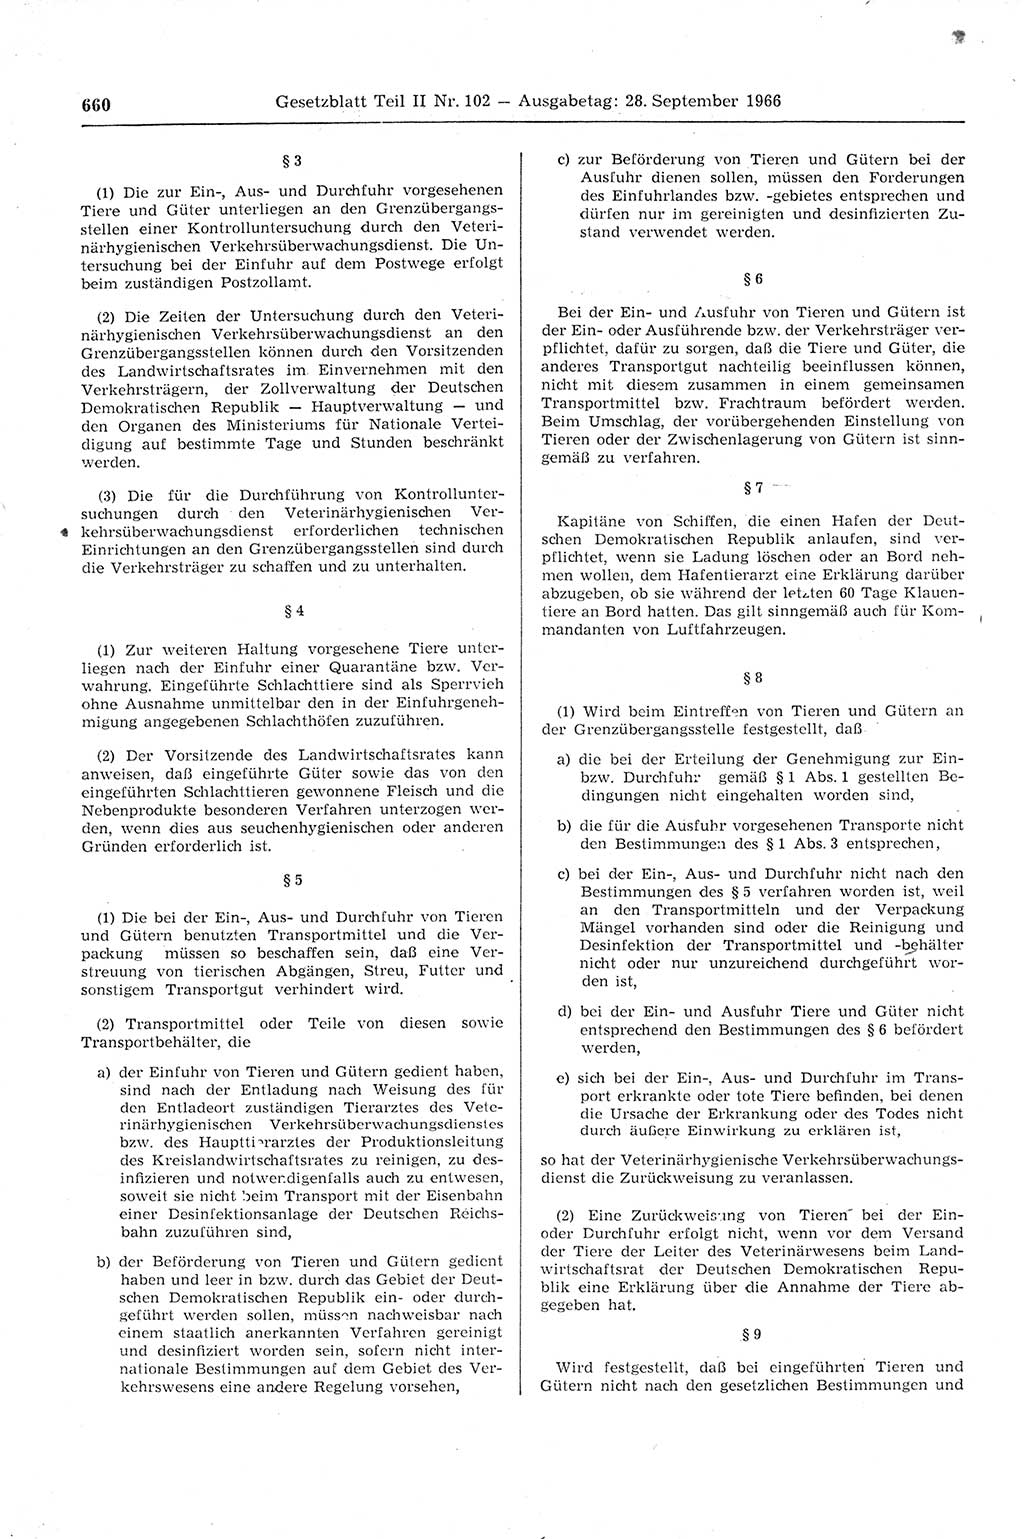 Gesetzblatt (GBl.) der Deutschen Demokratischen Republik (DDR) Teil ⅠⅠ 1966, Seite 660 (GBl. DDR ⅠⅠ 1966, S. 660)